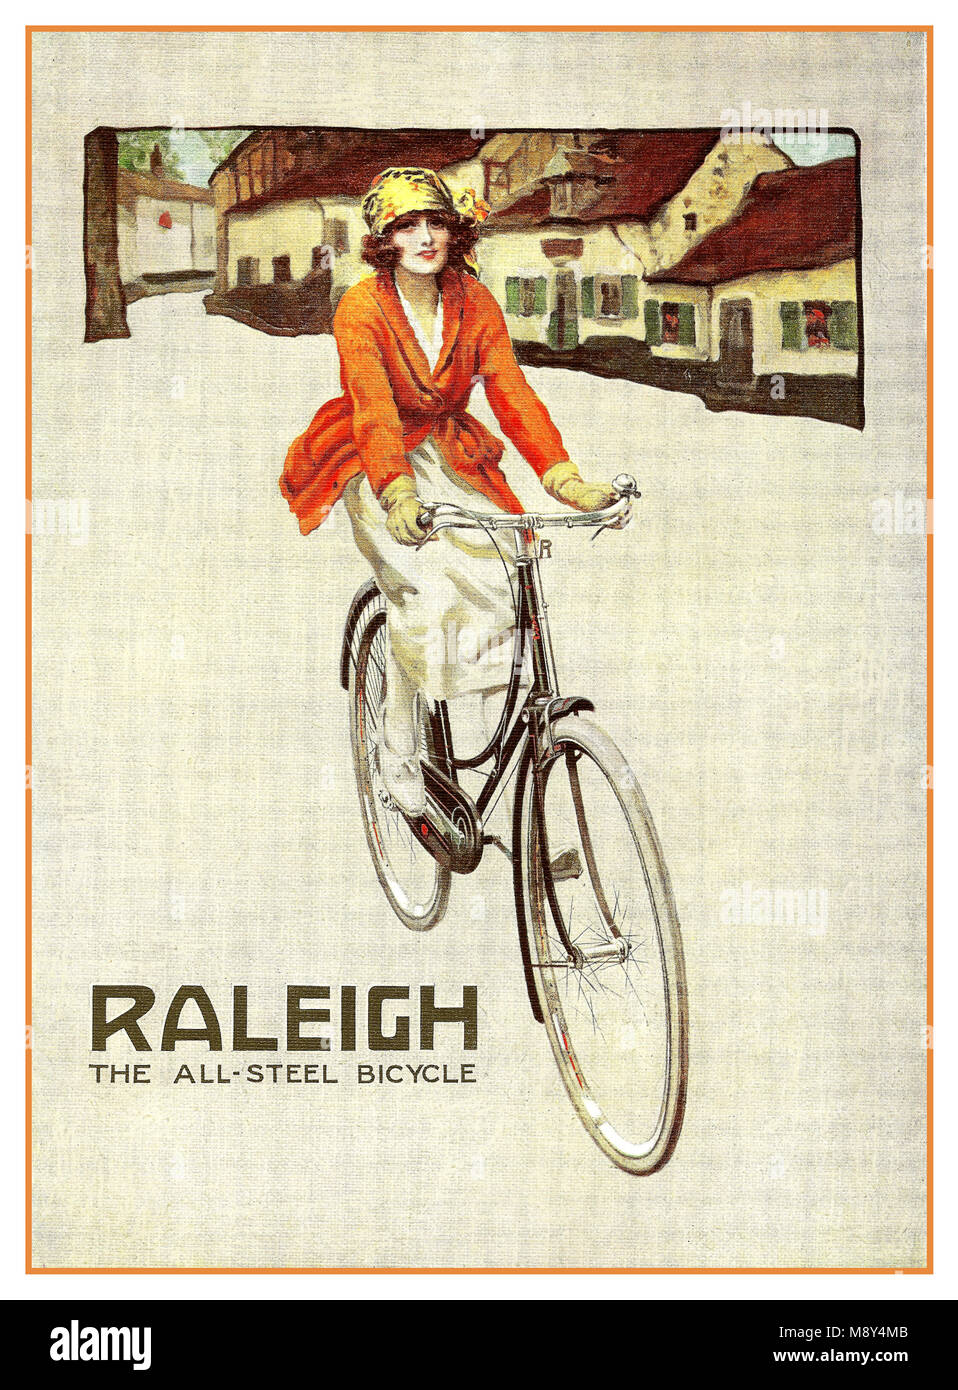 Jahrgang 1900 Raleigh Alle Stahl Fahrrad Plakatwerbung. Eine charmante ad für Raleigh's Werbeslogan - Raleigh die alle - Stahl Fahrrad - zuerst im Jahr 1890 eingeführt und seit Jahrzehnten verwendet. Eine stilvolle Frau reitet auf der Straße von einem charmanten kleinen ländlichen britische Stadt auf ihrem klassischen Raleigh bike Stockfoto